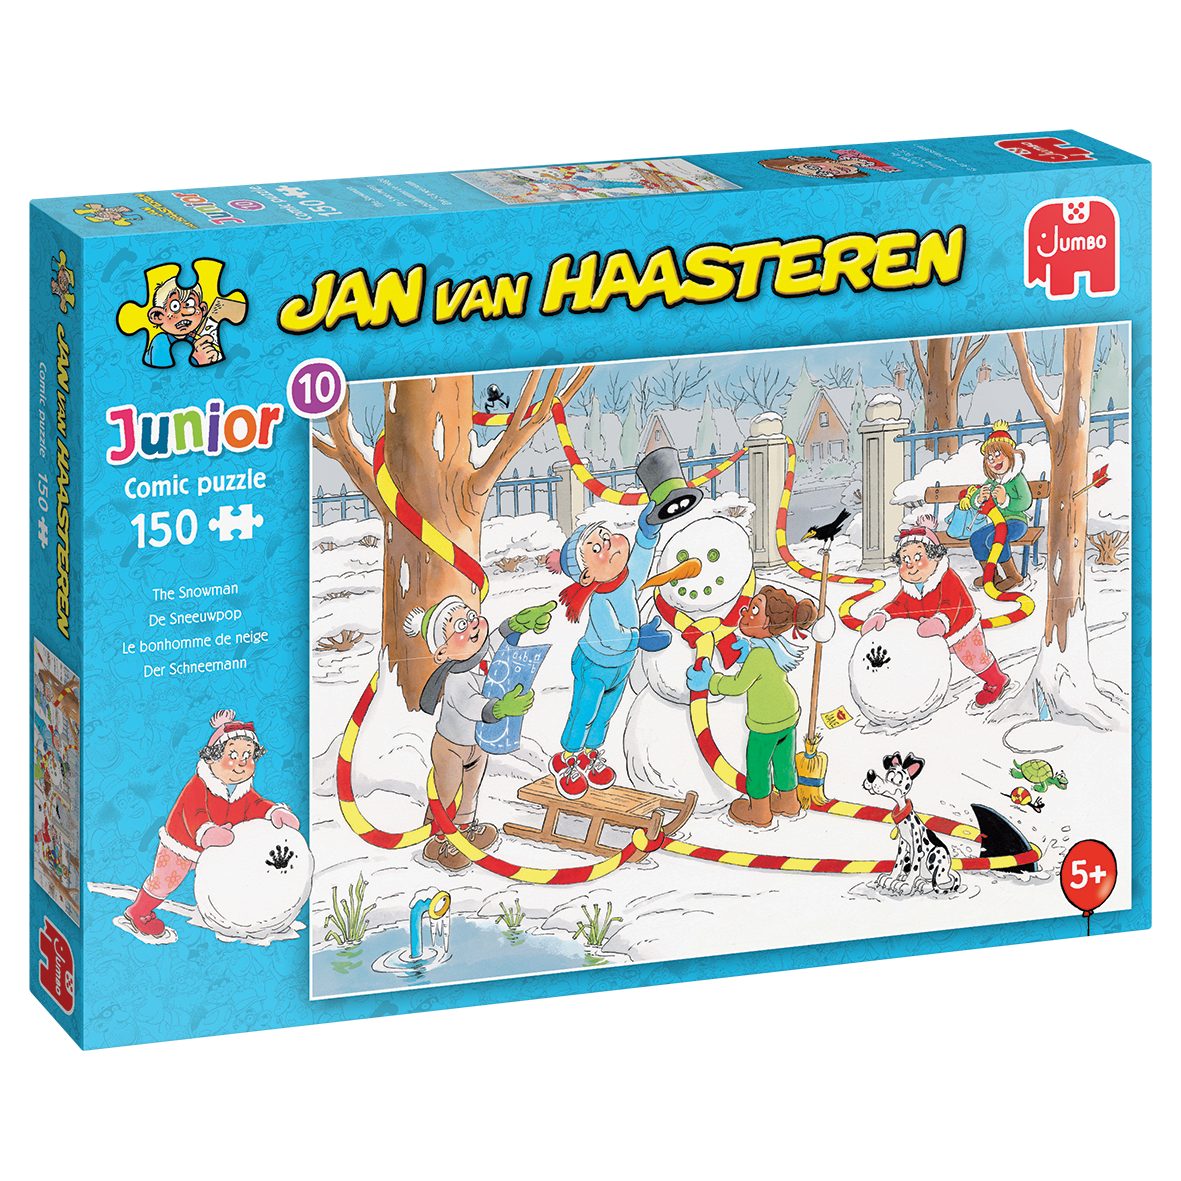 Jumbo Spiele Puzzle Jan van Haasteren Junior 10 Der Schneemann, 150 Puzzleteile, Made in Europe